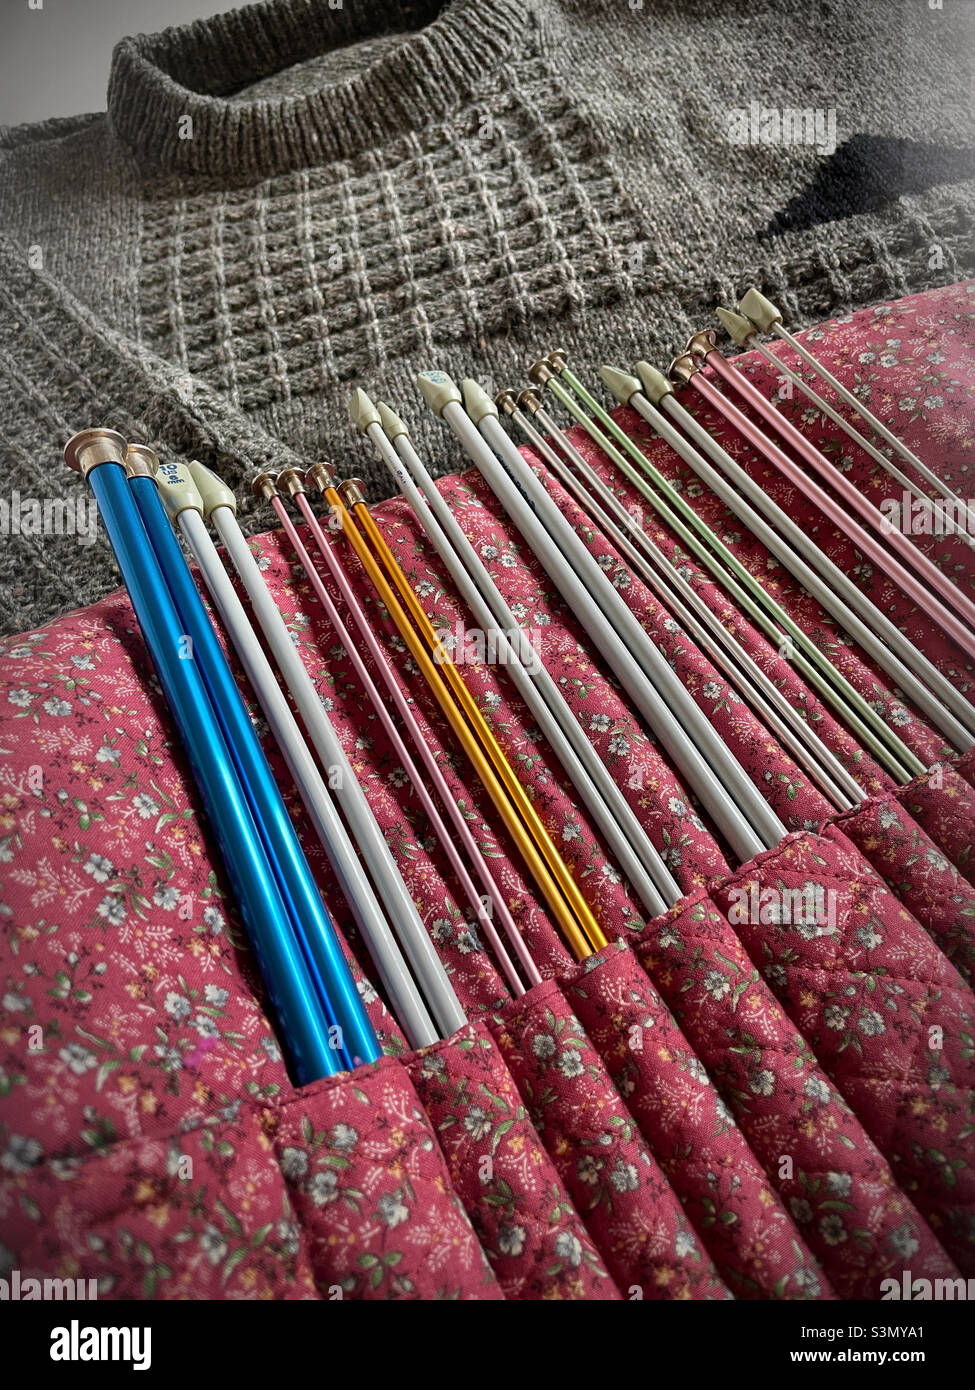 knitting needle organizer